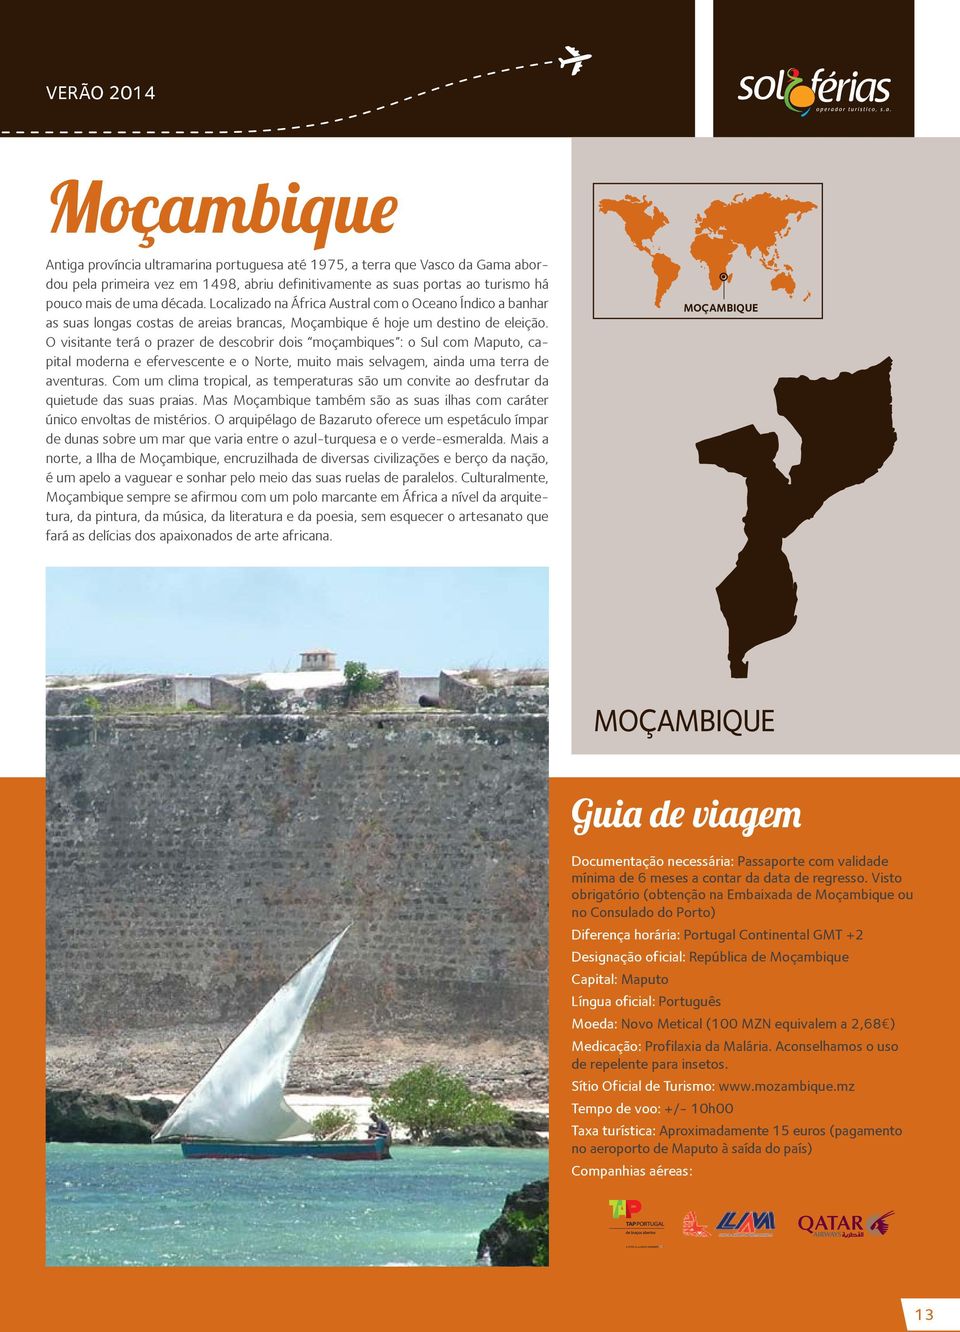 O visitante terá o prazer de descobrir dois moçambiques : o Sul com Maputo, capital moderna e efervescente e o Norte, muito mais selvagem, ainda uma terra de aventuras.